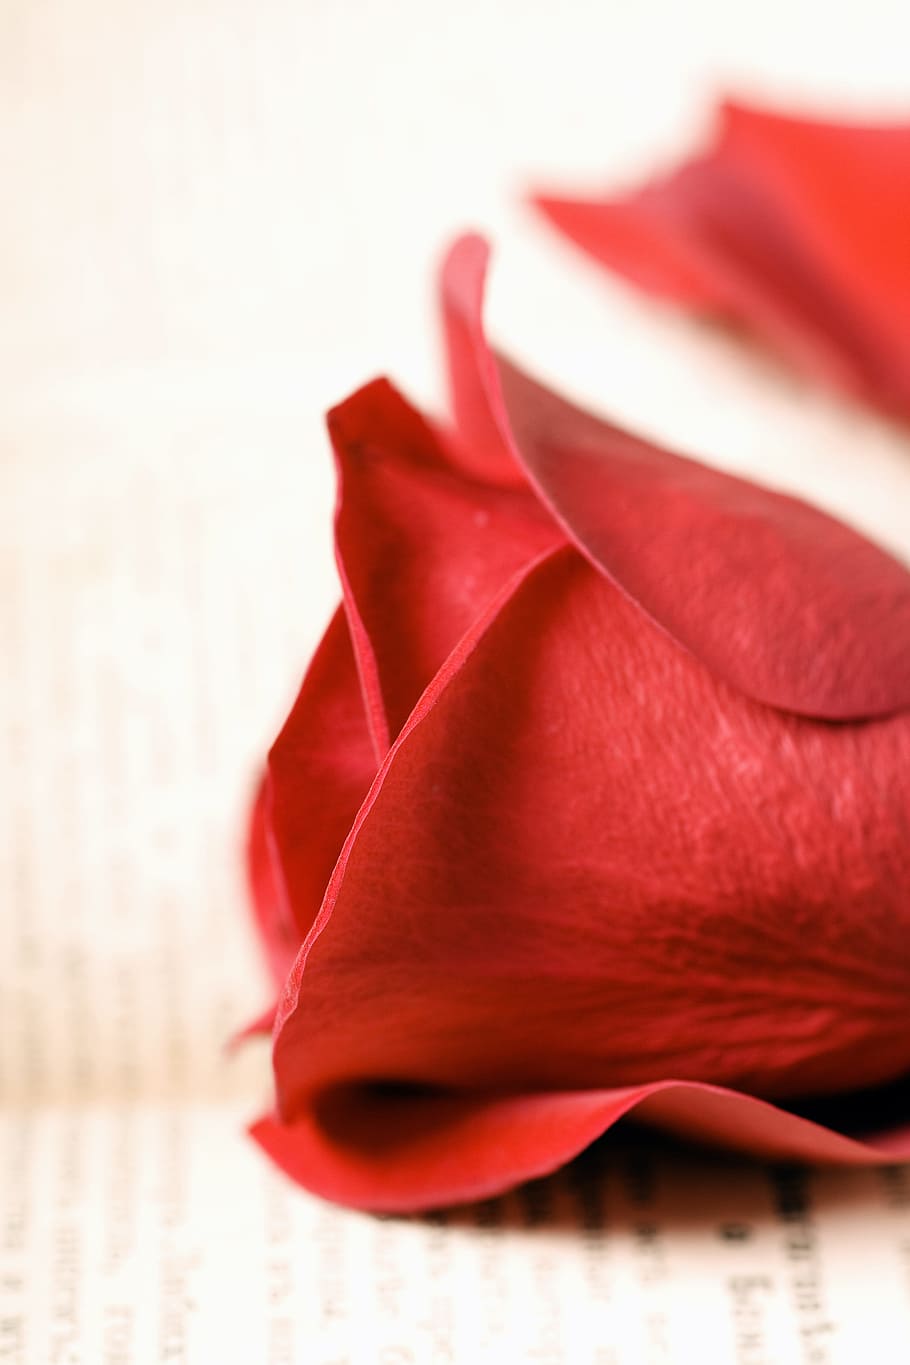 flor, fresco, presente, livro, vermelho, romance, romântico, rosa, espalhados, dia dos namorados